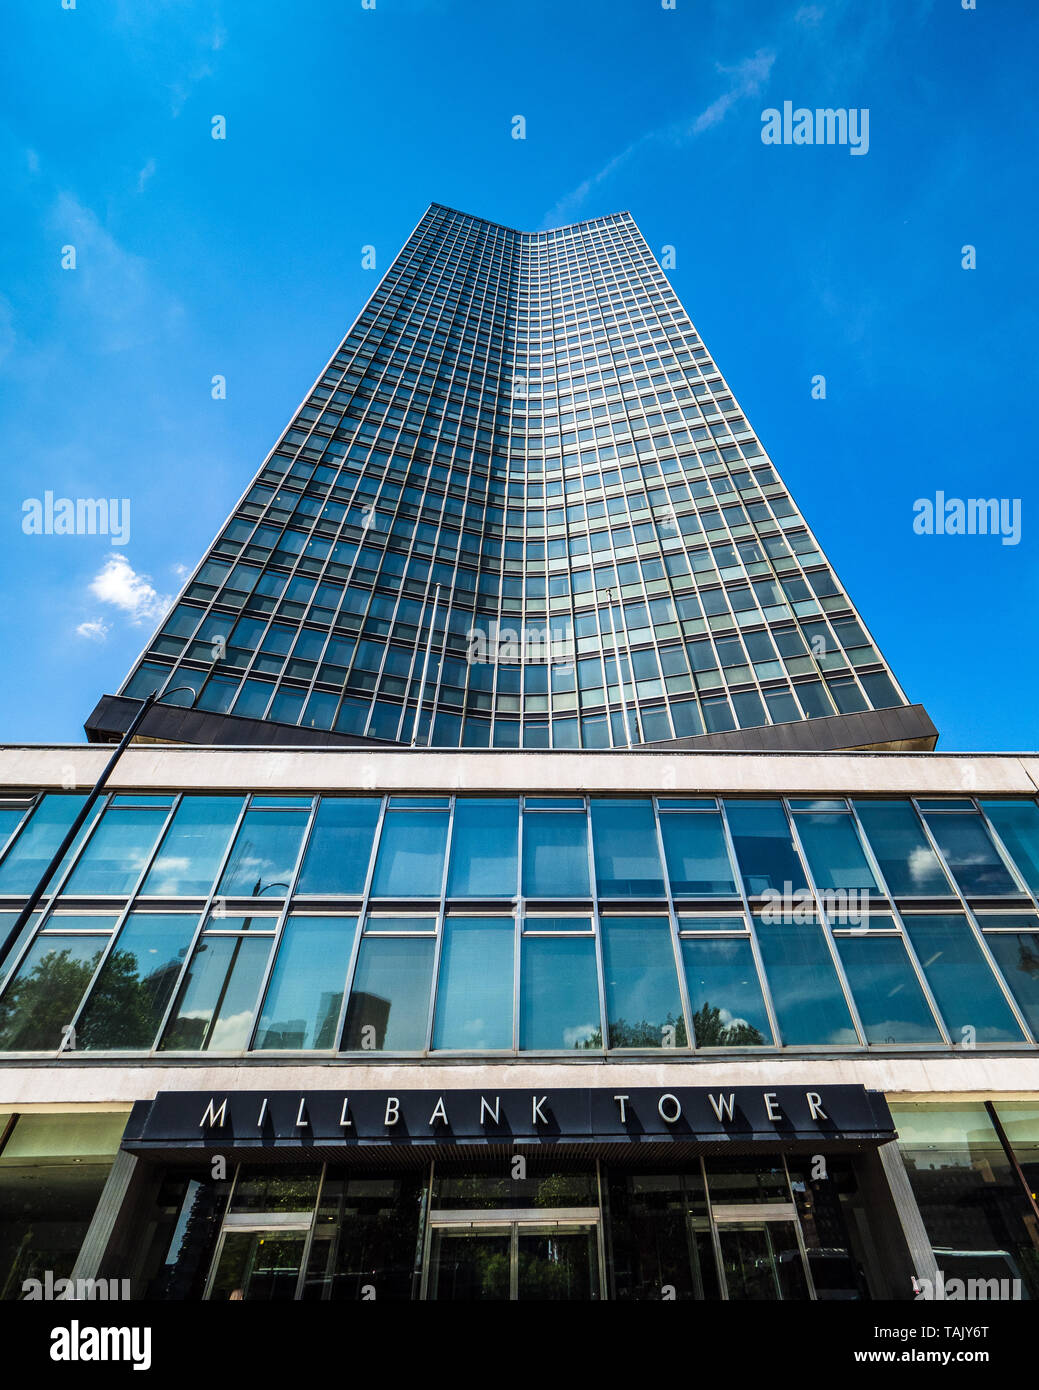 Millbank Tower Londres - un 118-gratte-ciel en face de la Tamise dans le centre de Londres, achevée en 1963 - Architectes Ronald Ward & Partners Banque D'Images